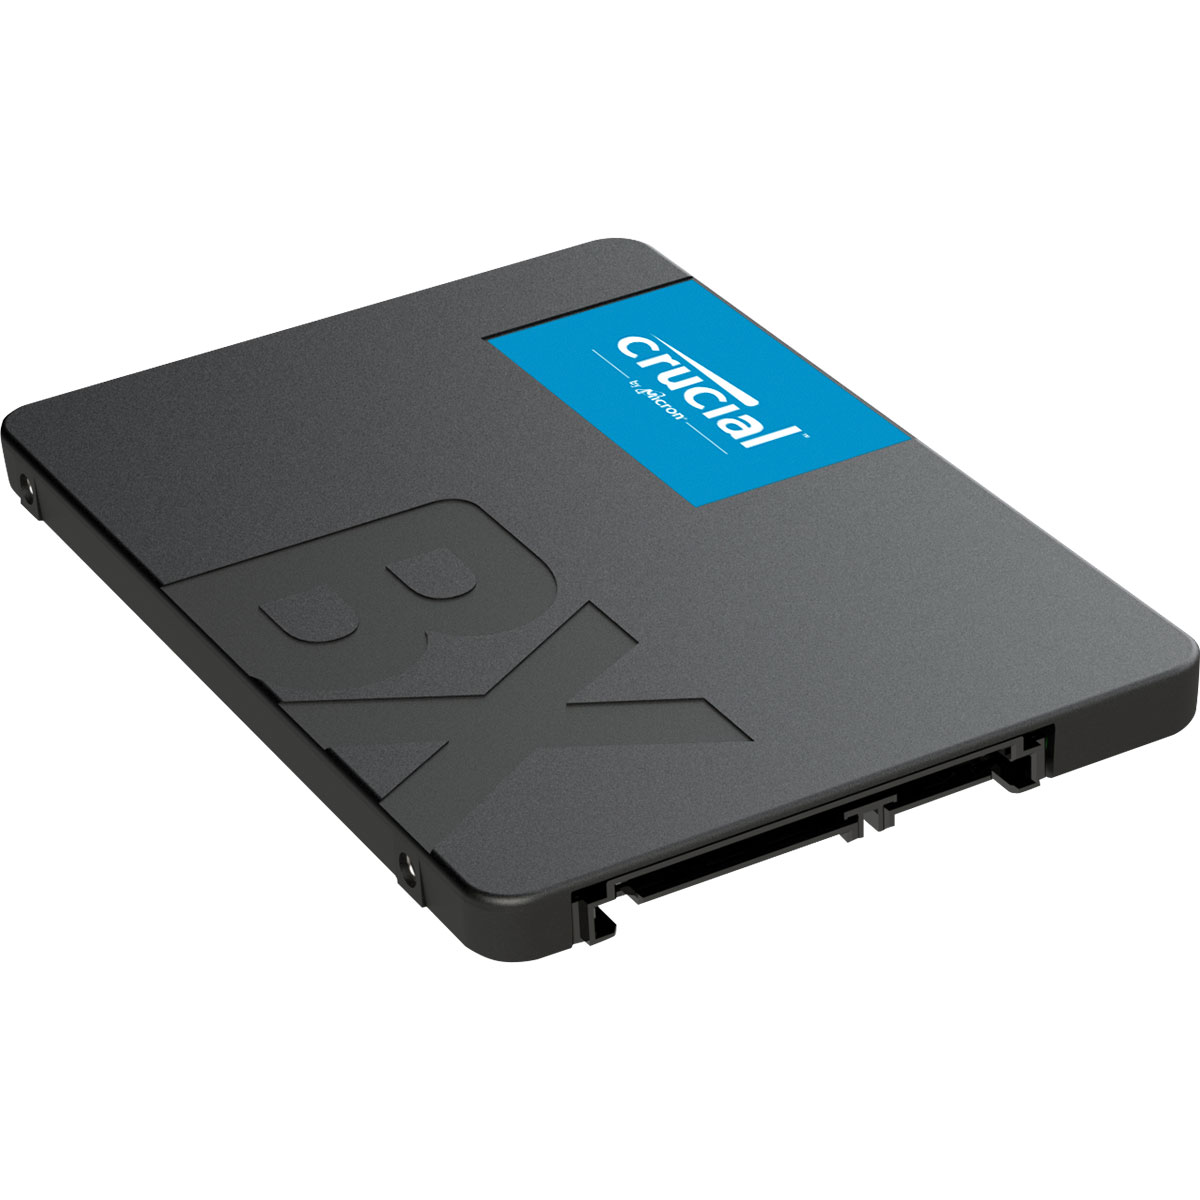 Disque dur SSD Crucial BX500 480 Go 2.5 pouces (7mm) Serial ATA 3 (6Gb/s)s, informatique ile de la Runion 974